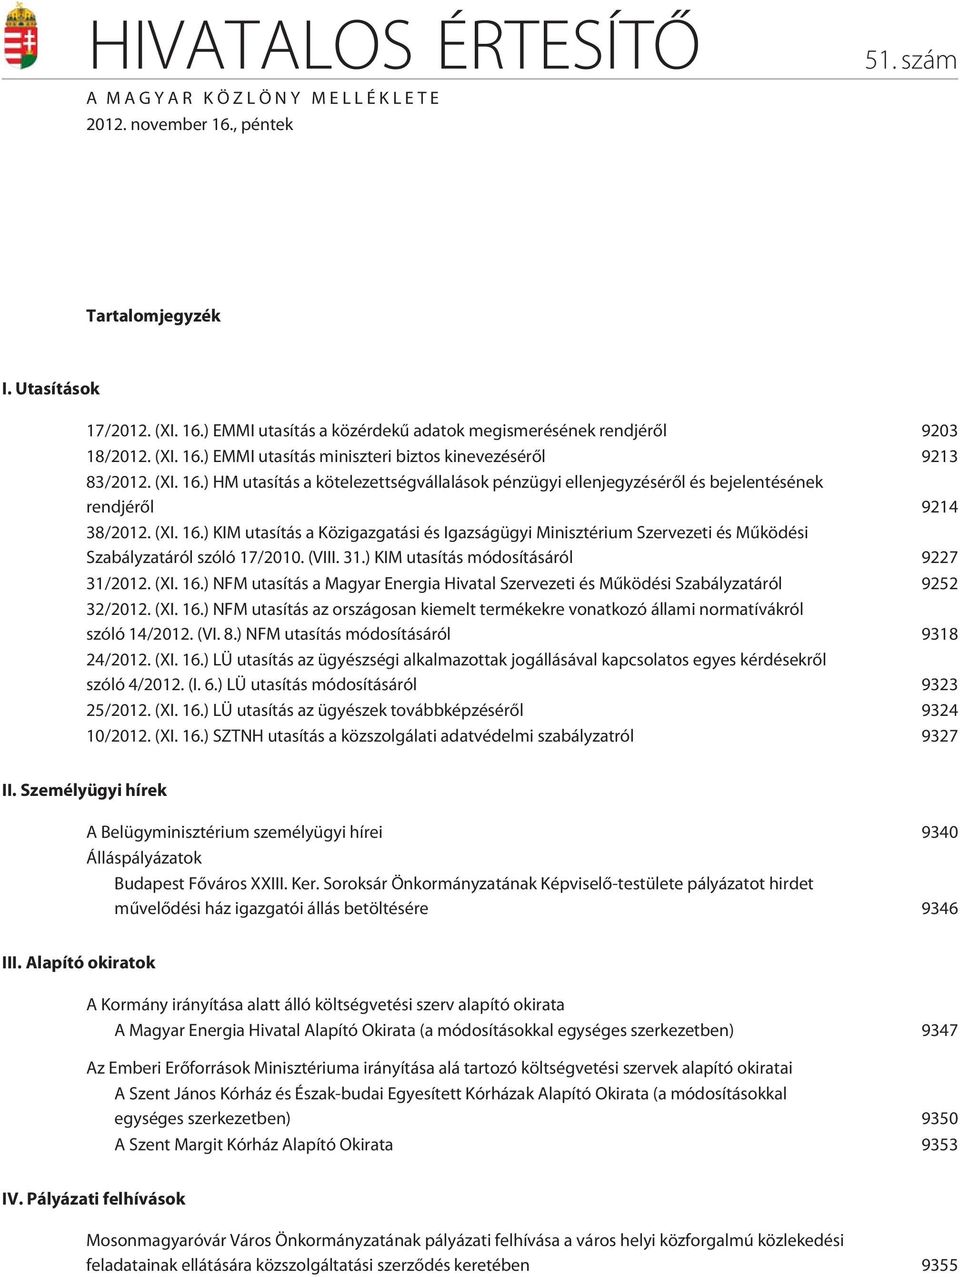 (VIII. 31.) KIM utasítás módosításáról 9227 31/2012. (XI. 16.) NFM utasítás a Magyar Energia Hivatal Szervezeti és Mûködési Szabályzatáról 9252 32/2012. (XI. 16.) NFM utasítás az országosan kiemelt termékekre vonatkozó állami normatívákról szóló 14/2012.